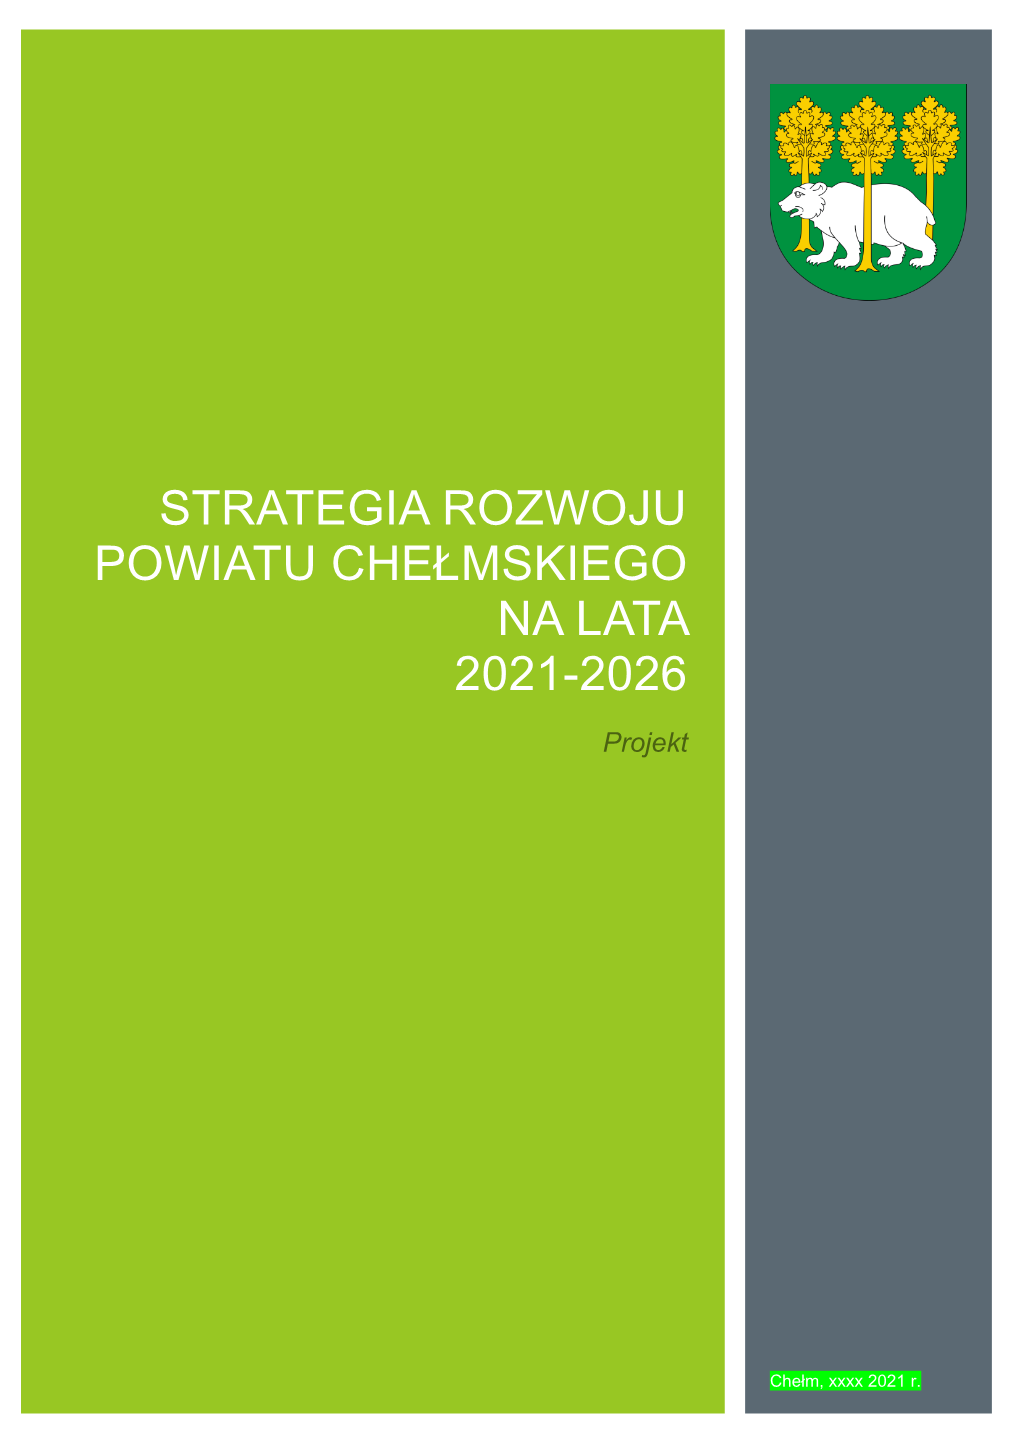 Strategia Rozwoju Powiatu Chełmskiego Na Lata 2021-2026 Została Opracowana Przez Firmę Eurocompass Sp